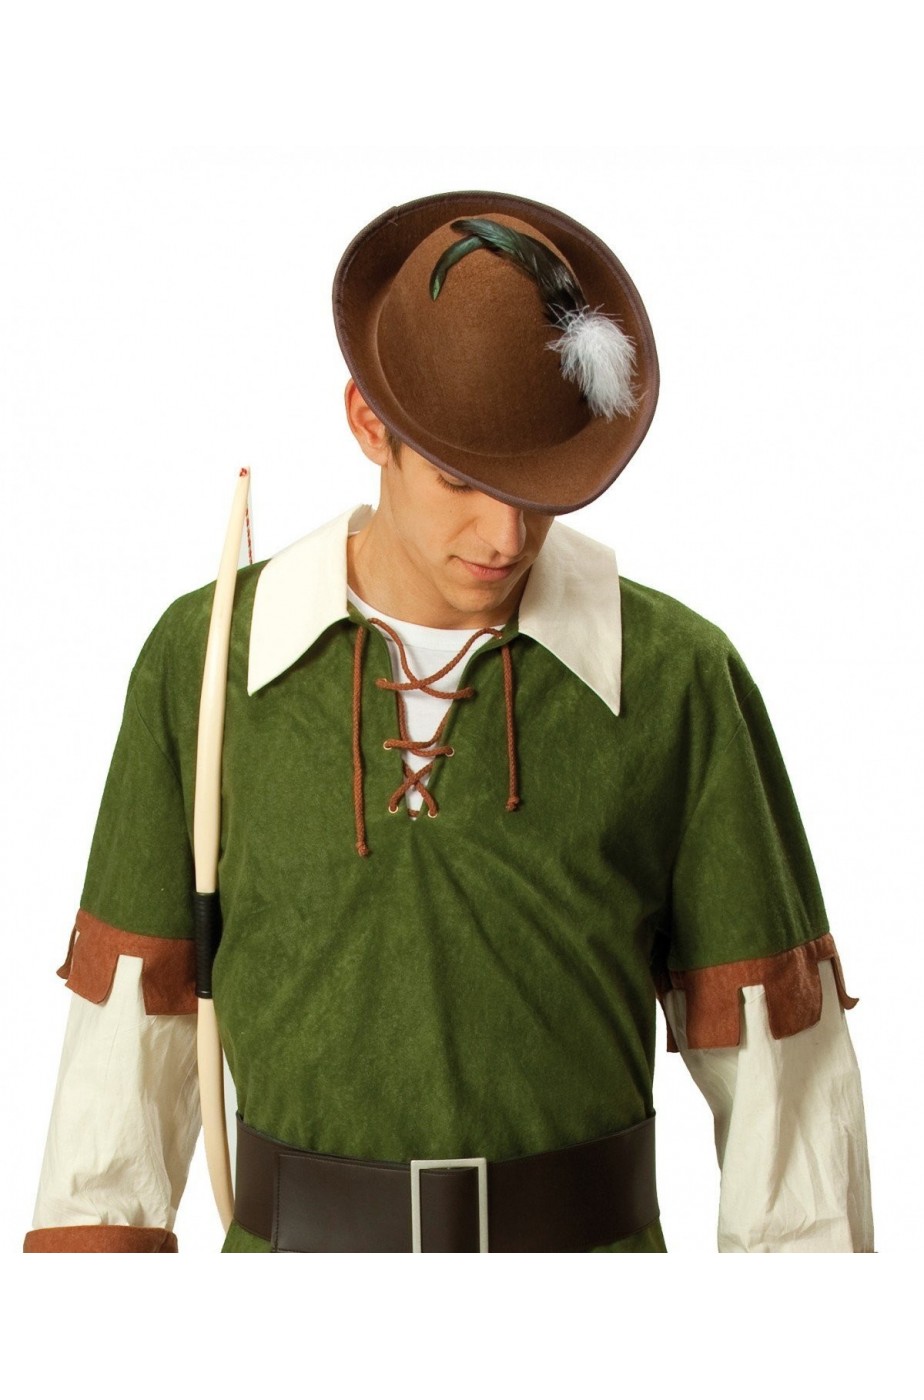 Cappello elfo o robin hood o tirolese